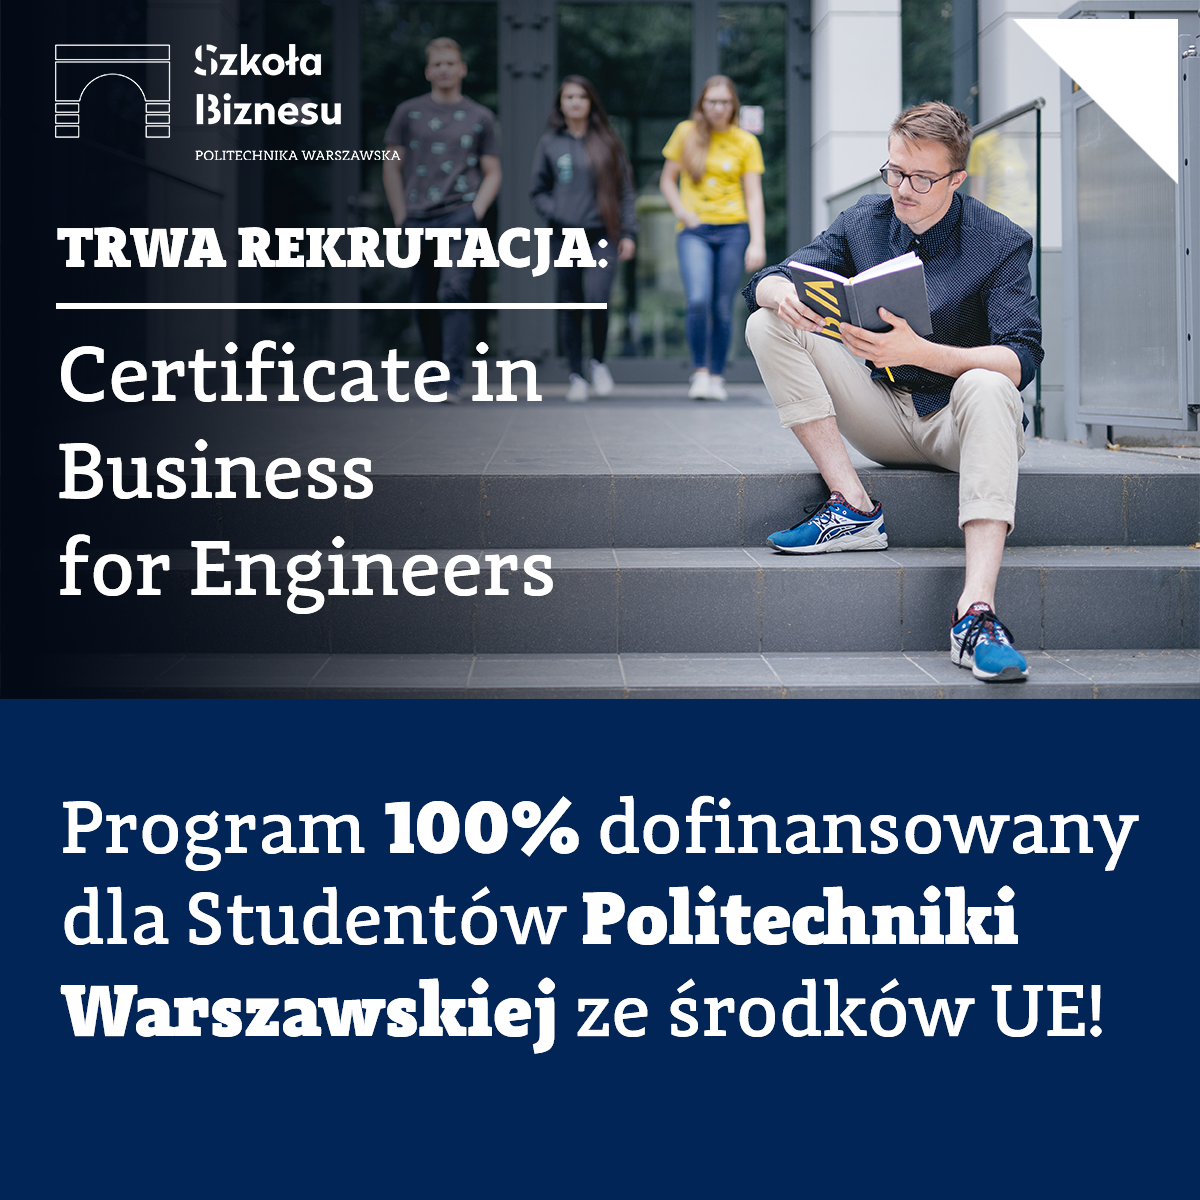 Certificate in Business for Engineers Szkoły Biznesu PW